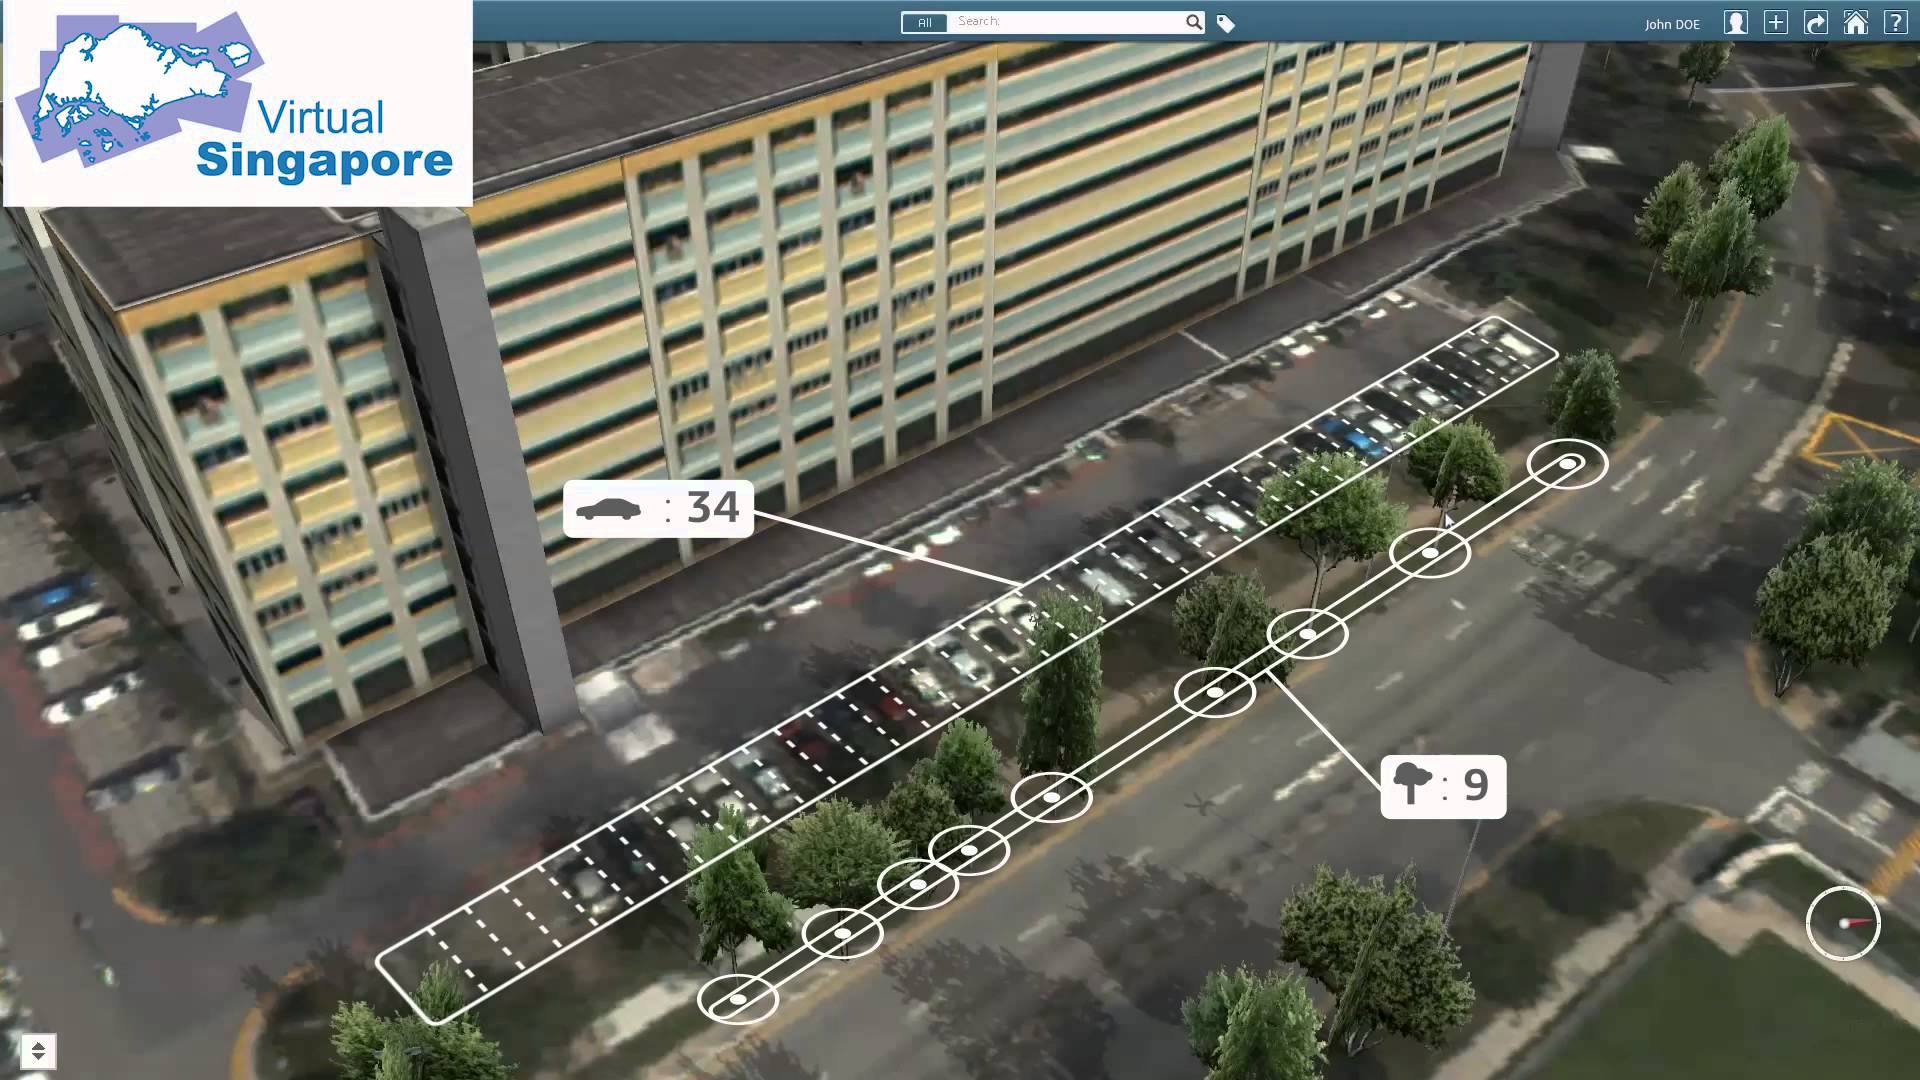 Singapore xây dựng bản sao quốc gia trên thế giới ảo